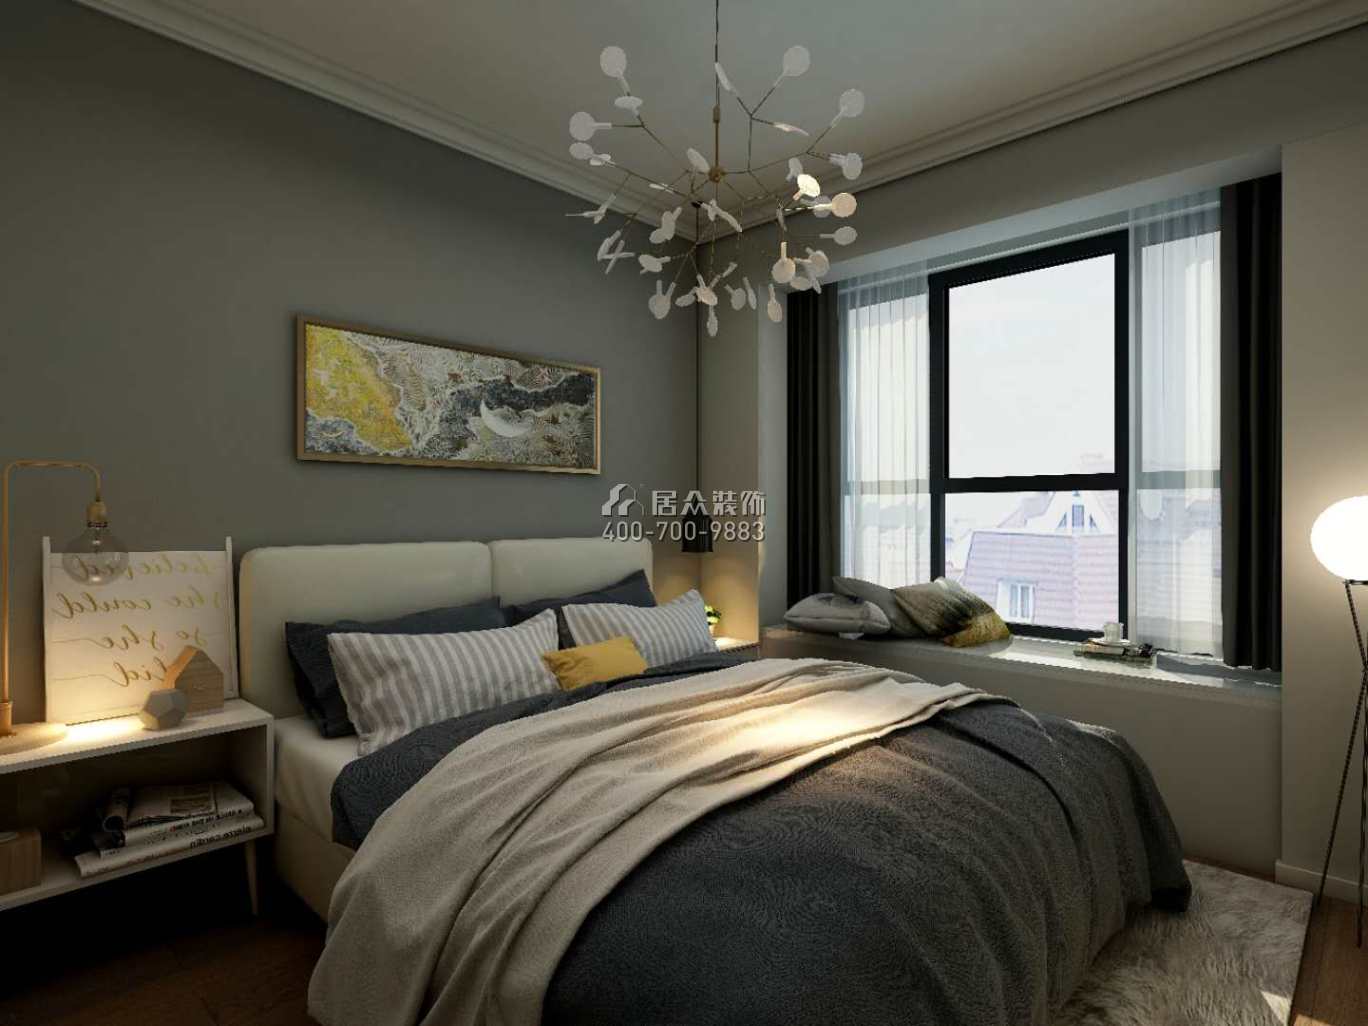 龙光玖龙玺100平方米现代简约风格平层户型卧室装修效果图